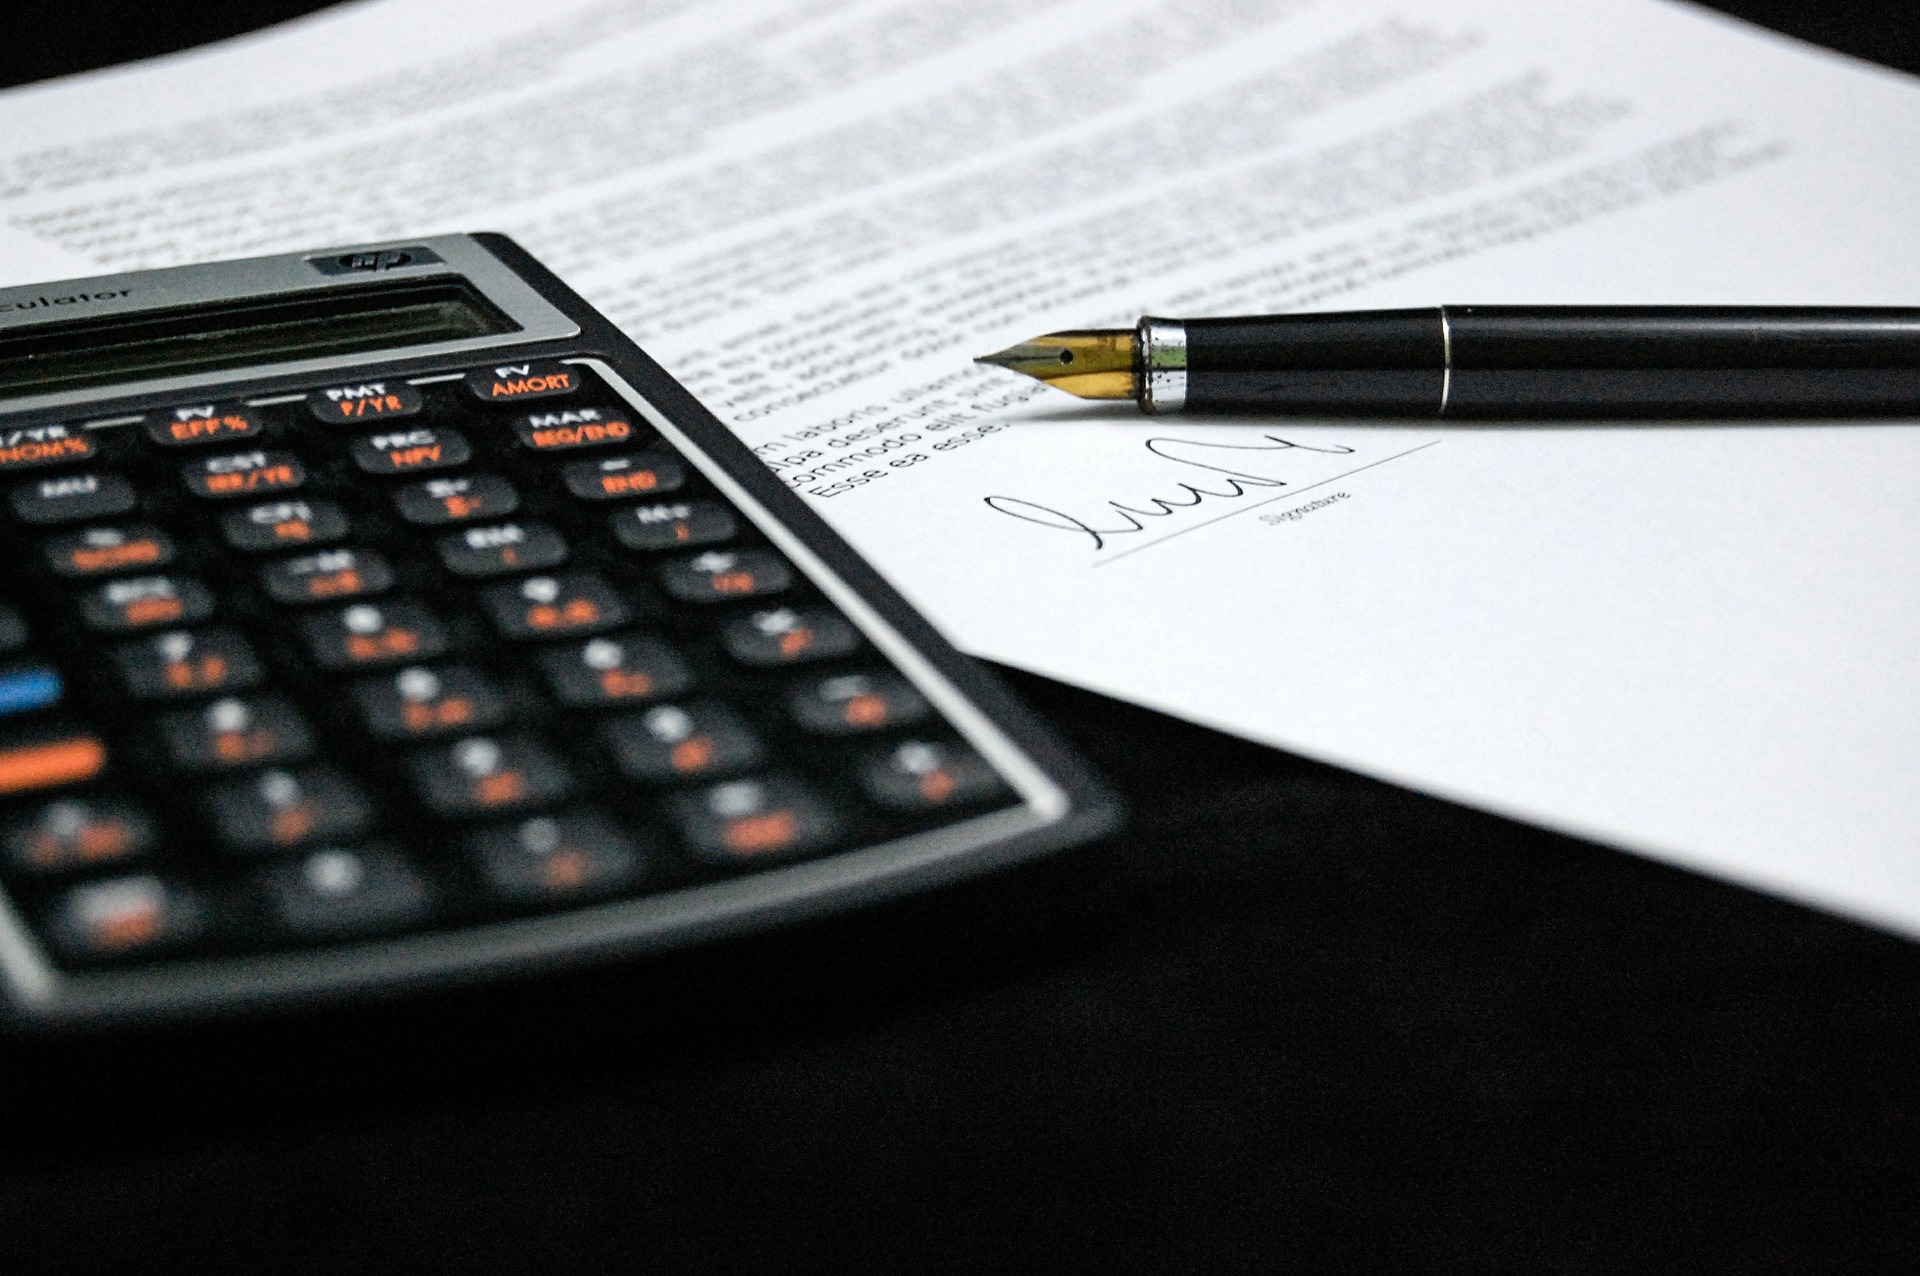 calculadora, documento y pluma fuente sobre una mesa.